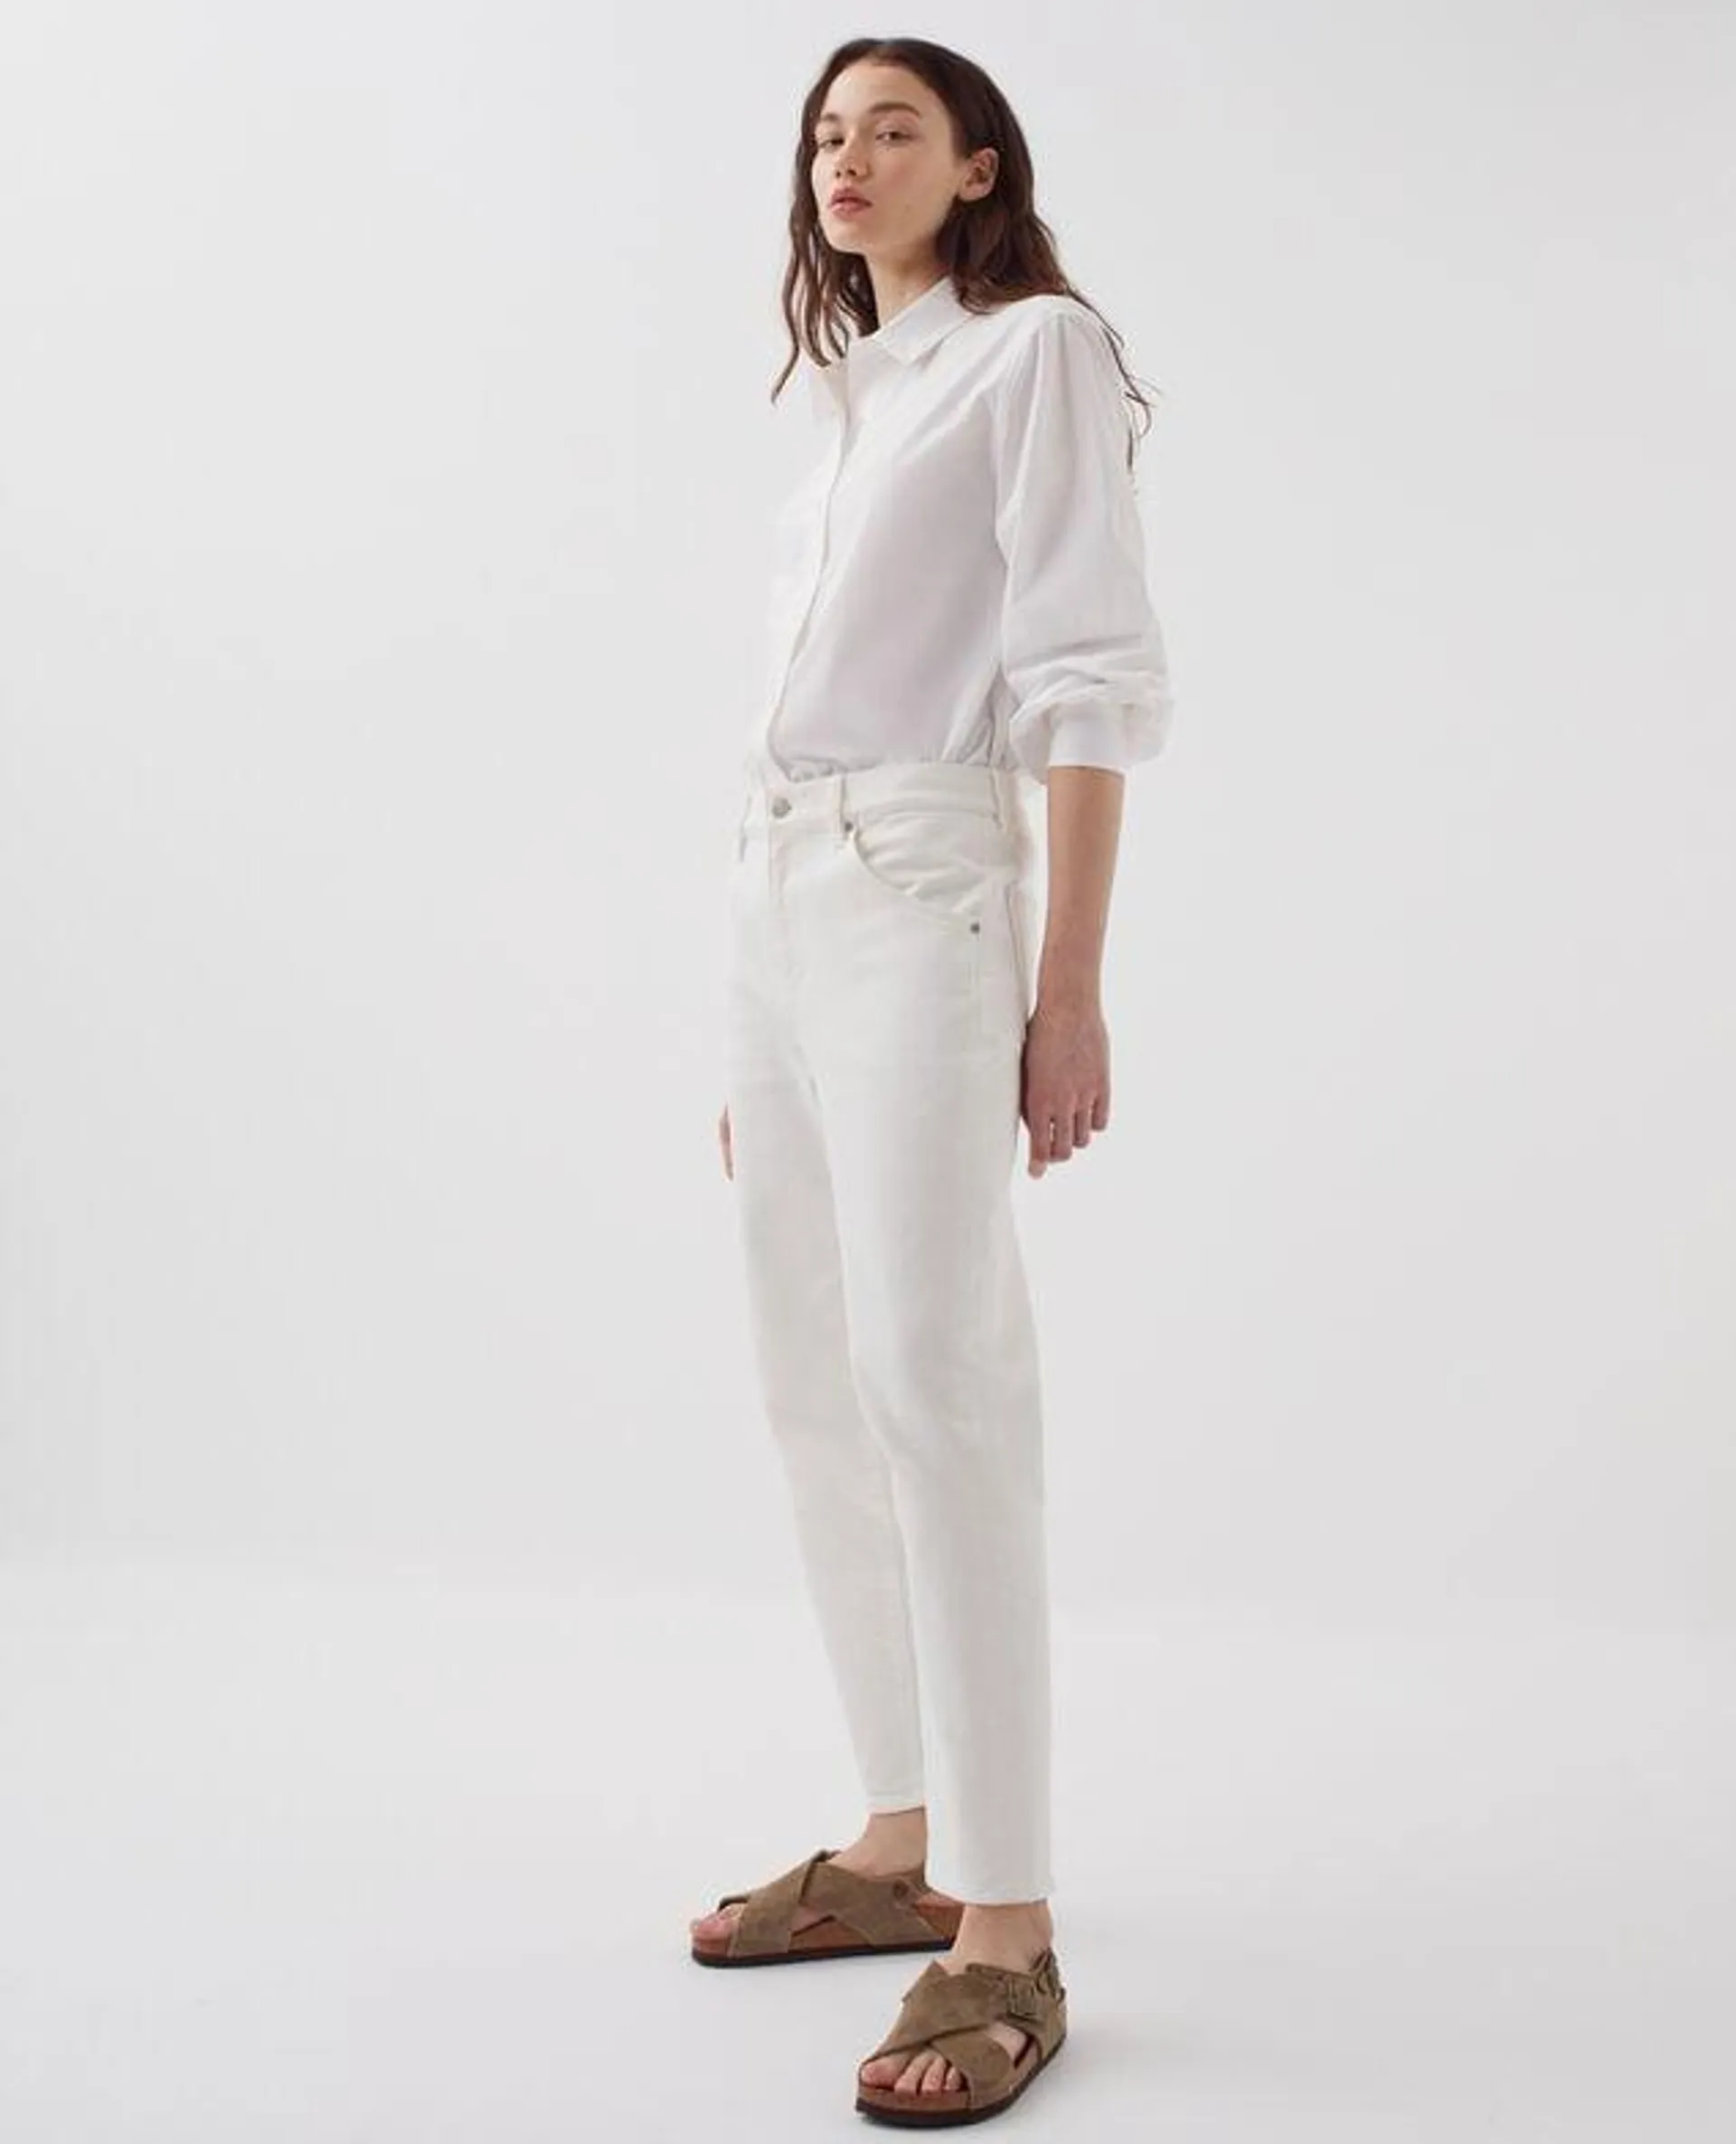 RITA - Jeans slouchy white